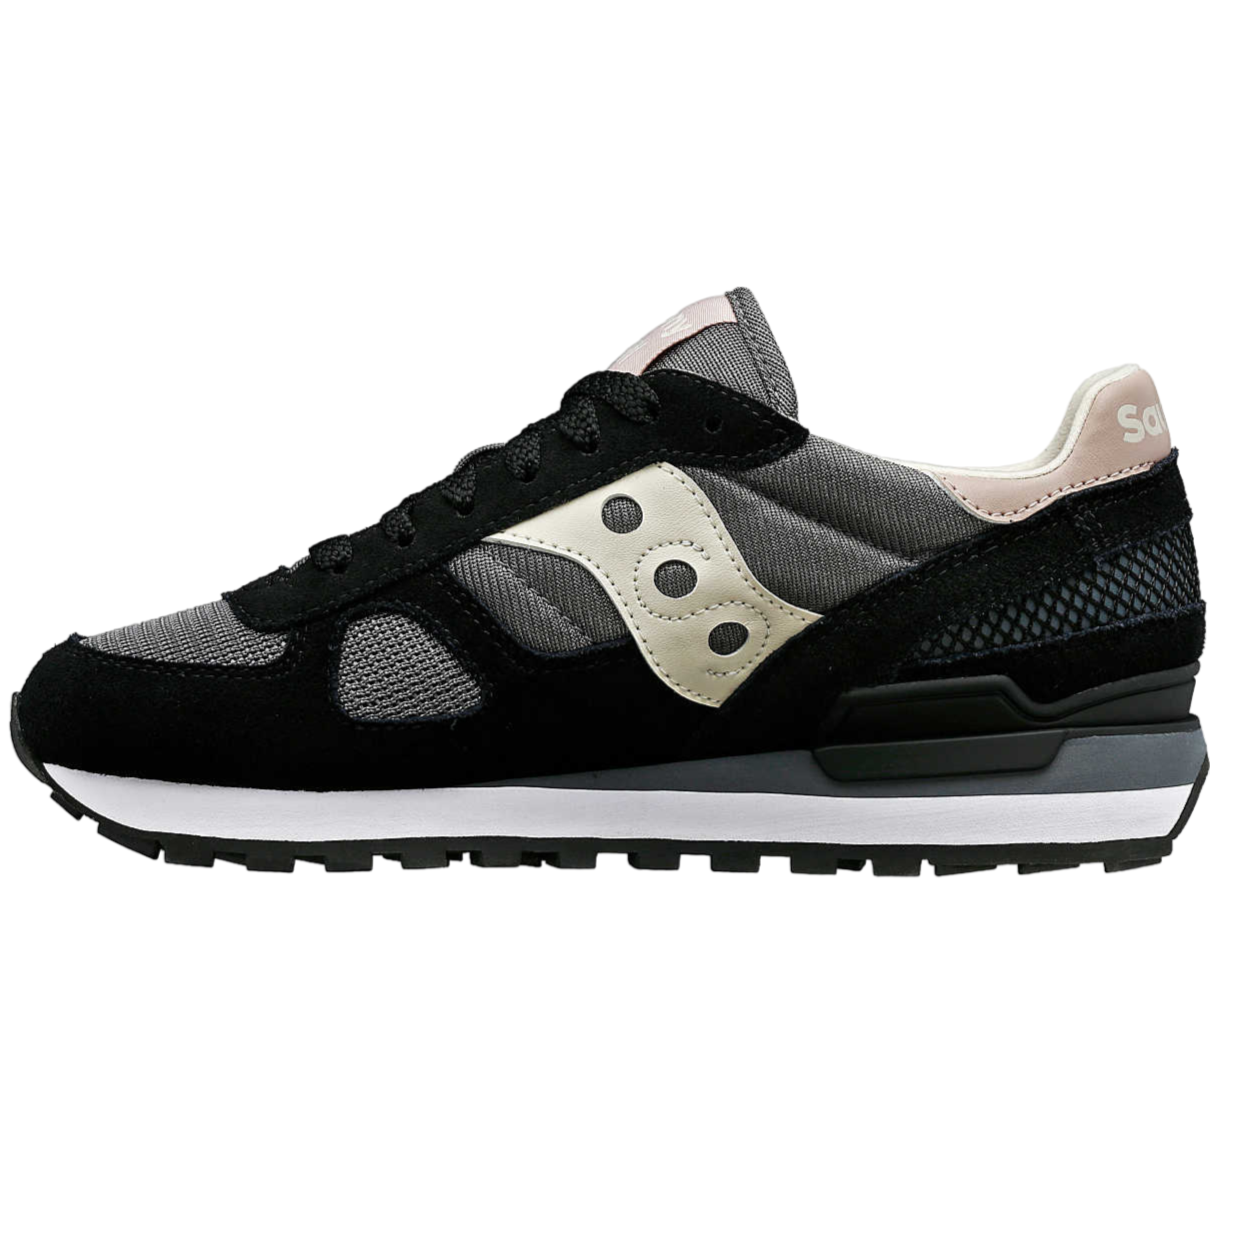 Saucony Originals women&#39;s sneakers shoe Shadow S1108-871 black-grey